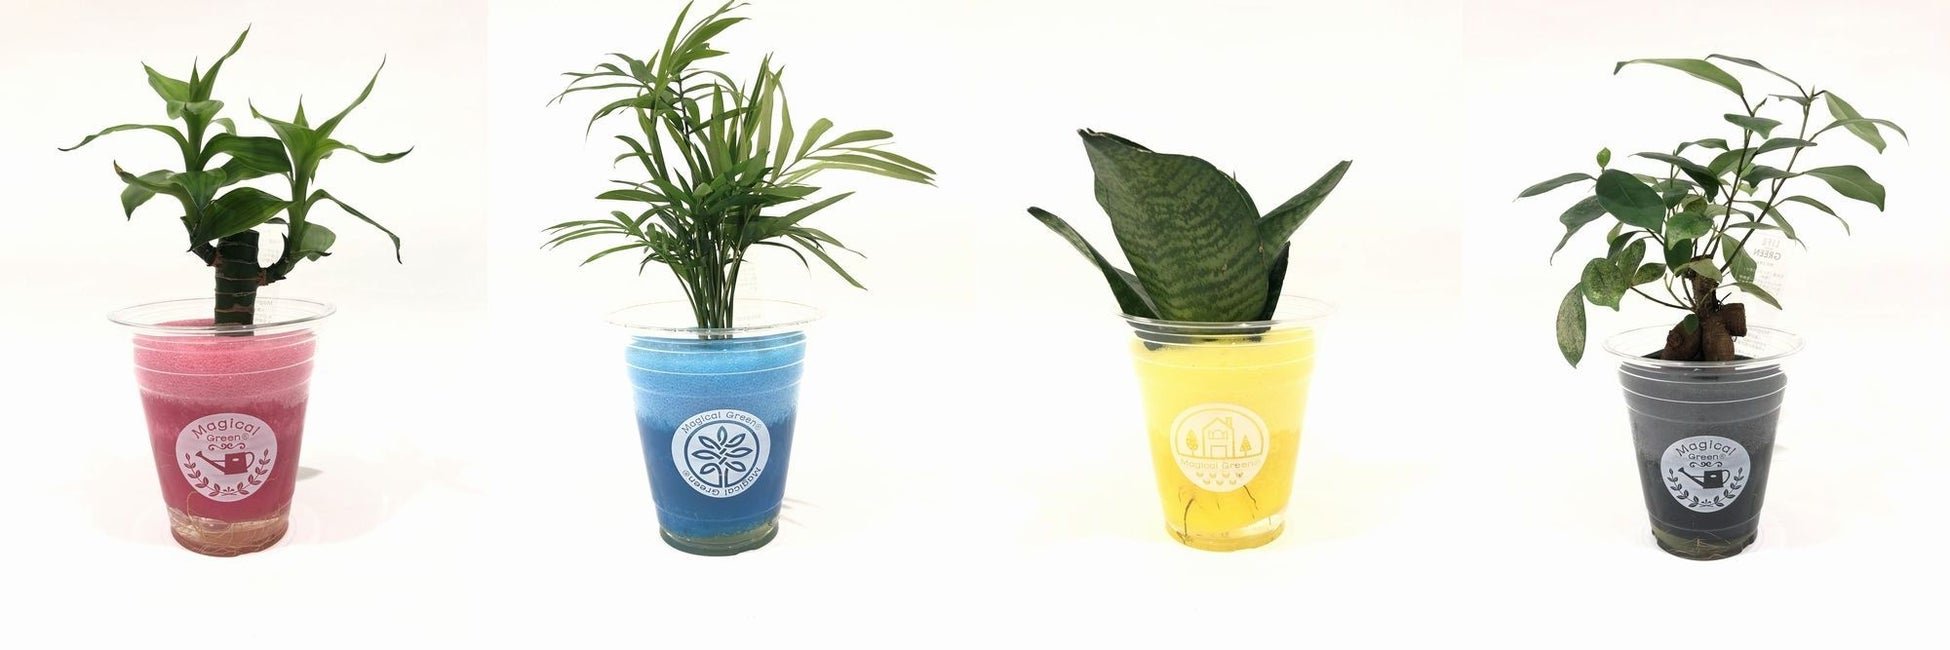 マジカルグリーン植物例　左からキングバンブー、テーブルヤシ、サンセベリア、ガジュマル